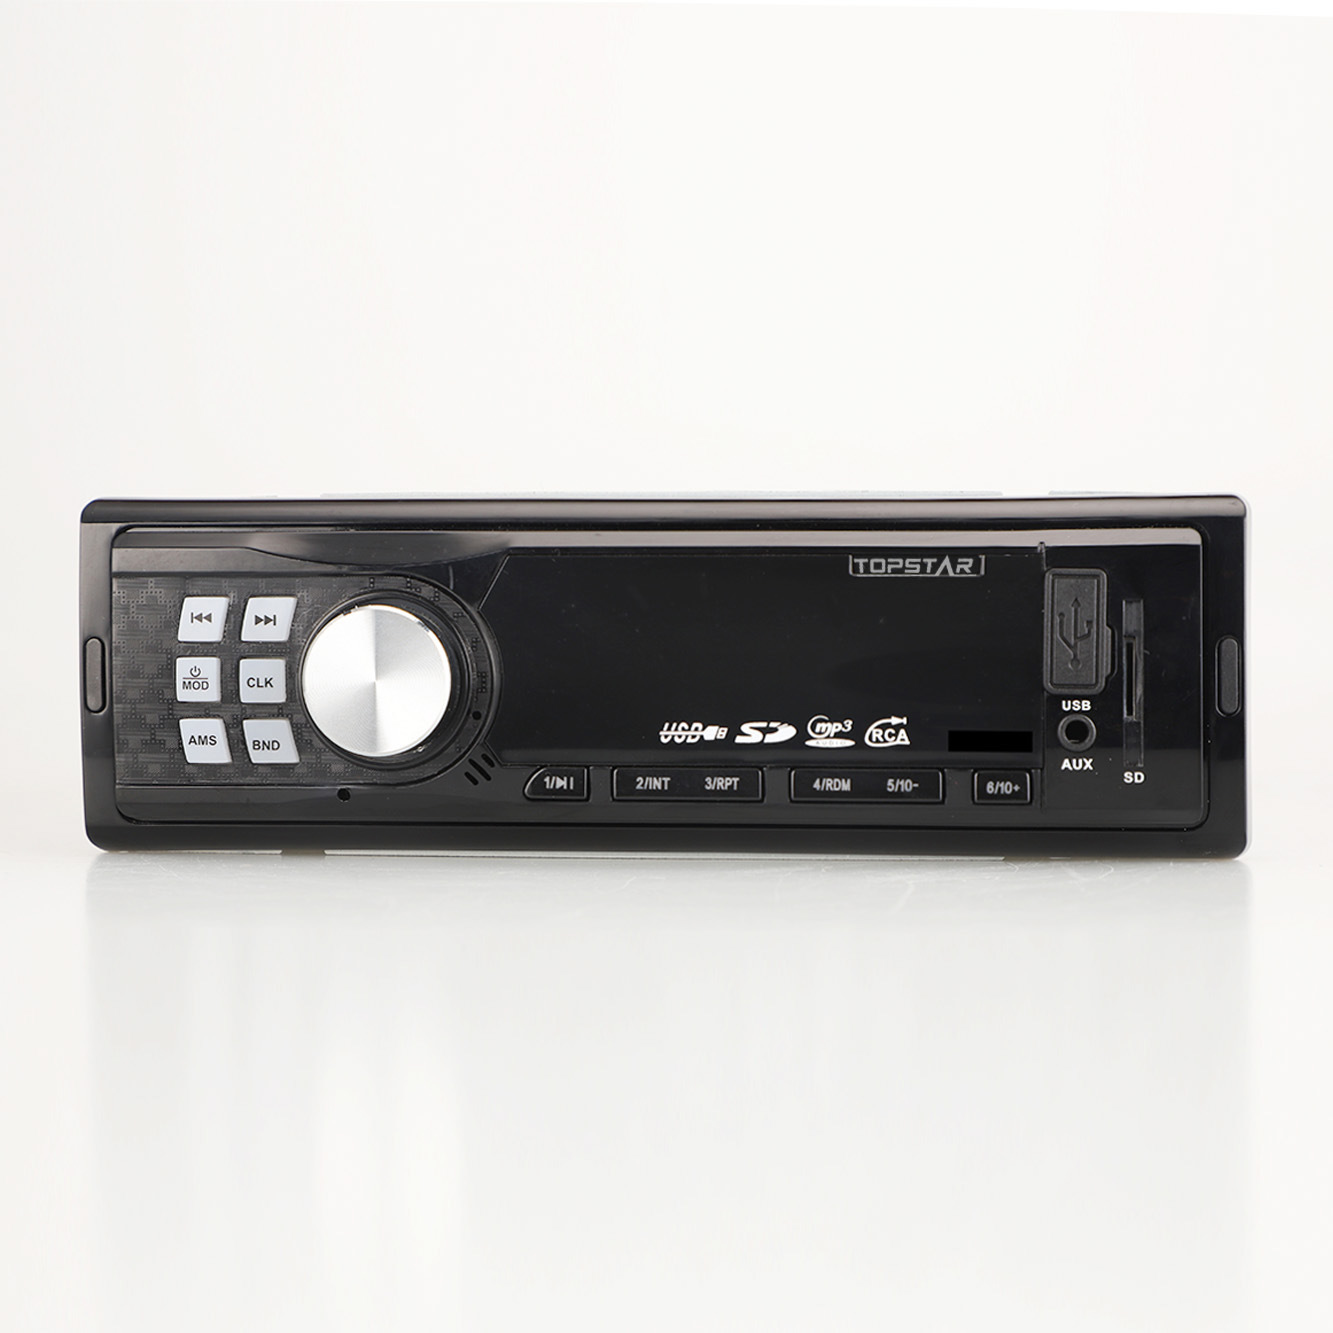 FM الارسال الصوت سيارة ستيريو بلوتوث فيديو الصوت ملحق للسيارة راديو السيارة لوحة ثابتة سيارة مشغل MP3 مع Aux